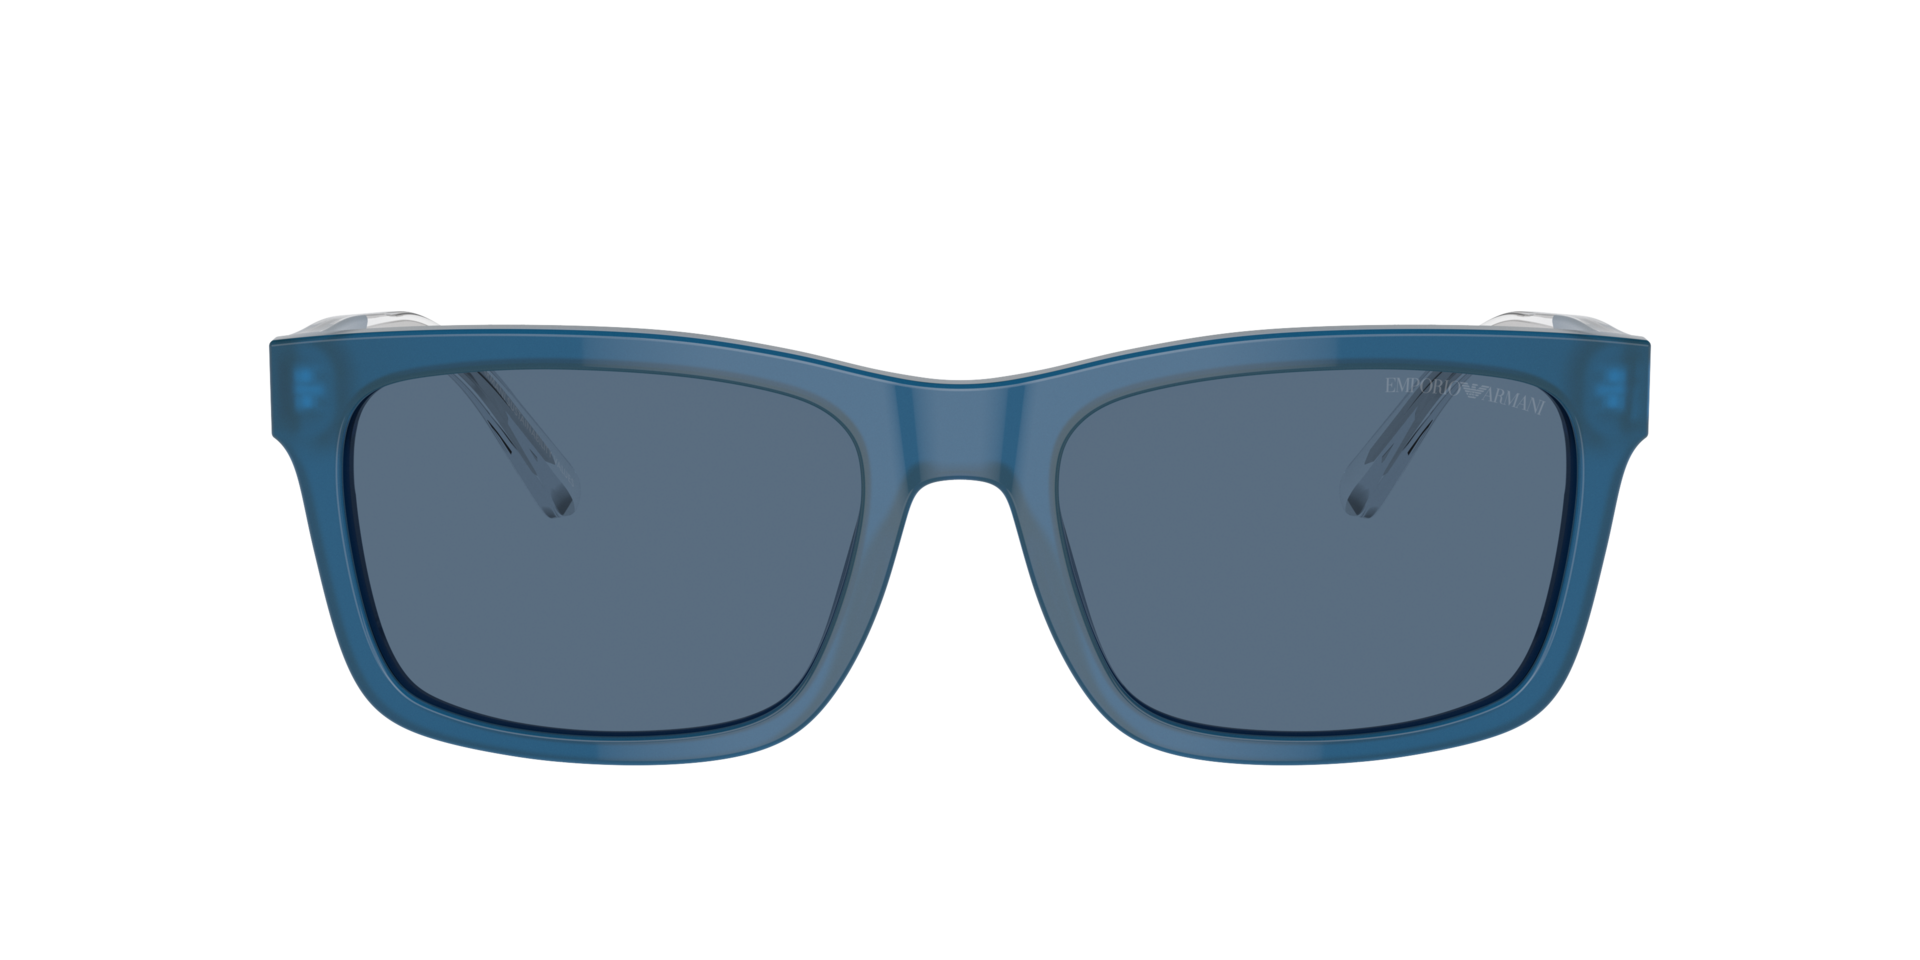 Das Bild zeigt die Sonnenbrille EA4224 609280 von der Marke Emporio Armani in blau.